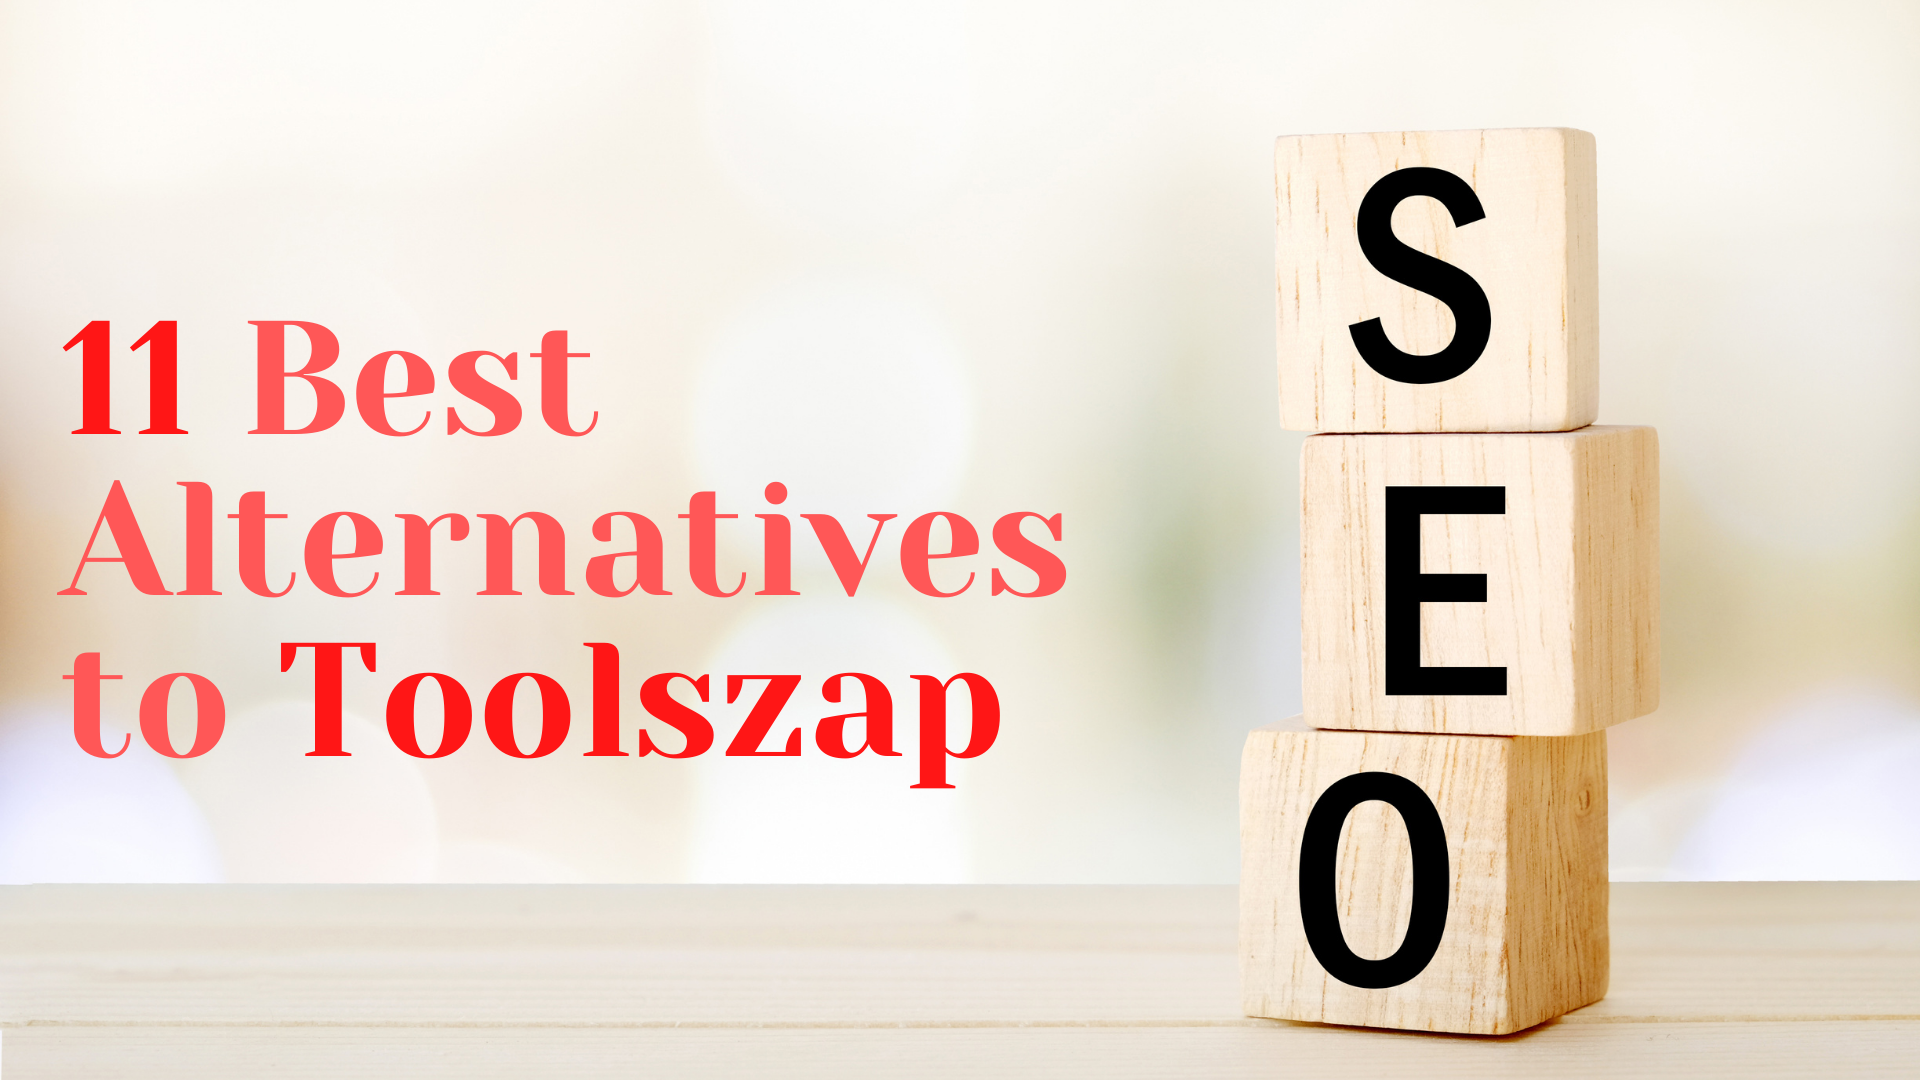 11 Best Alternatives to Toolszap